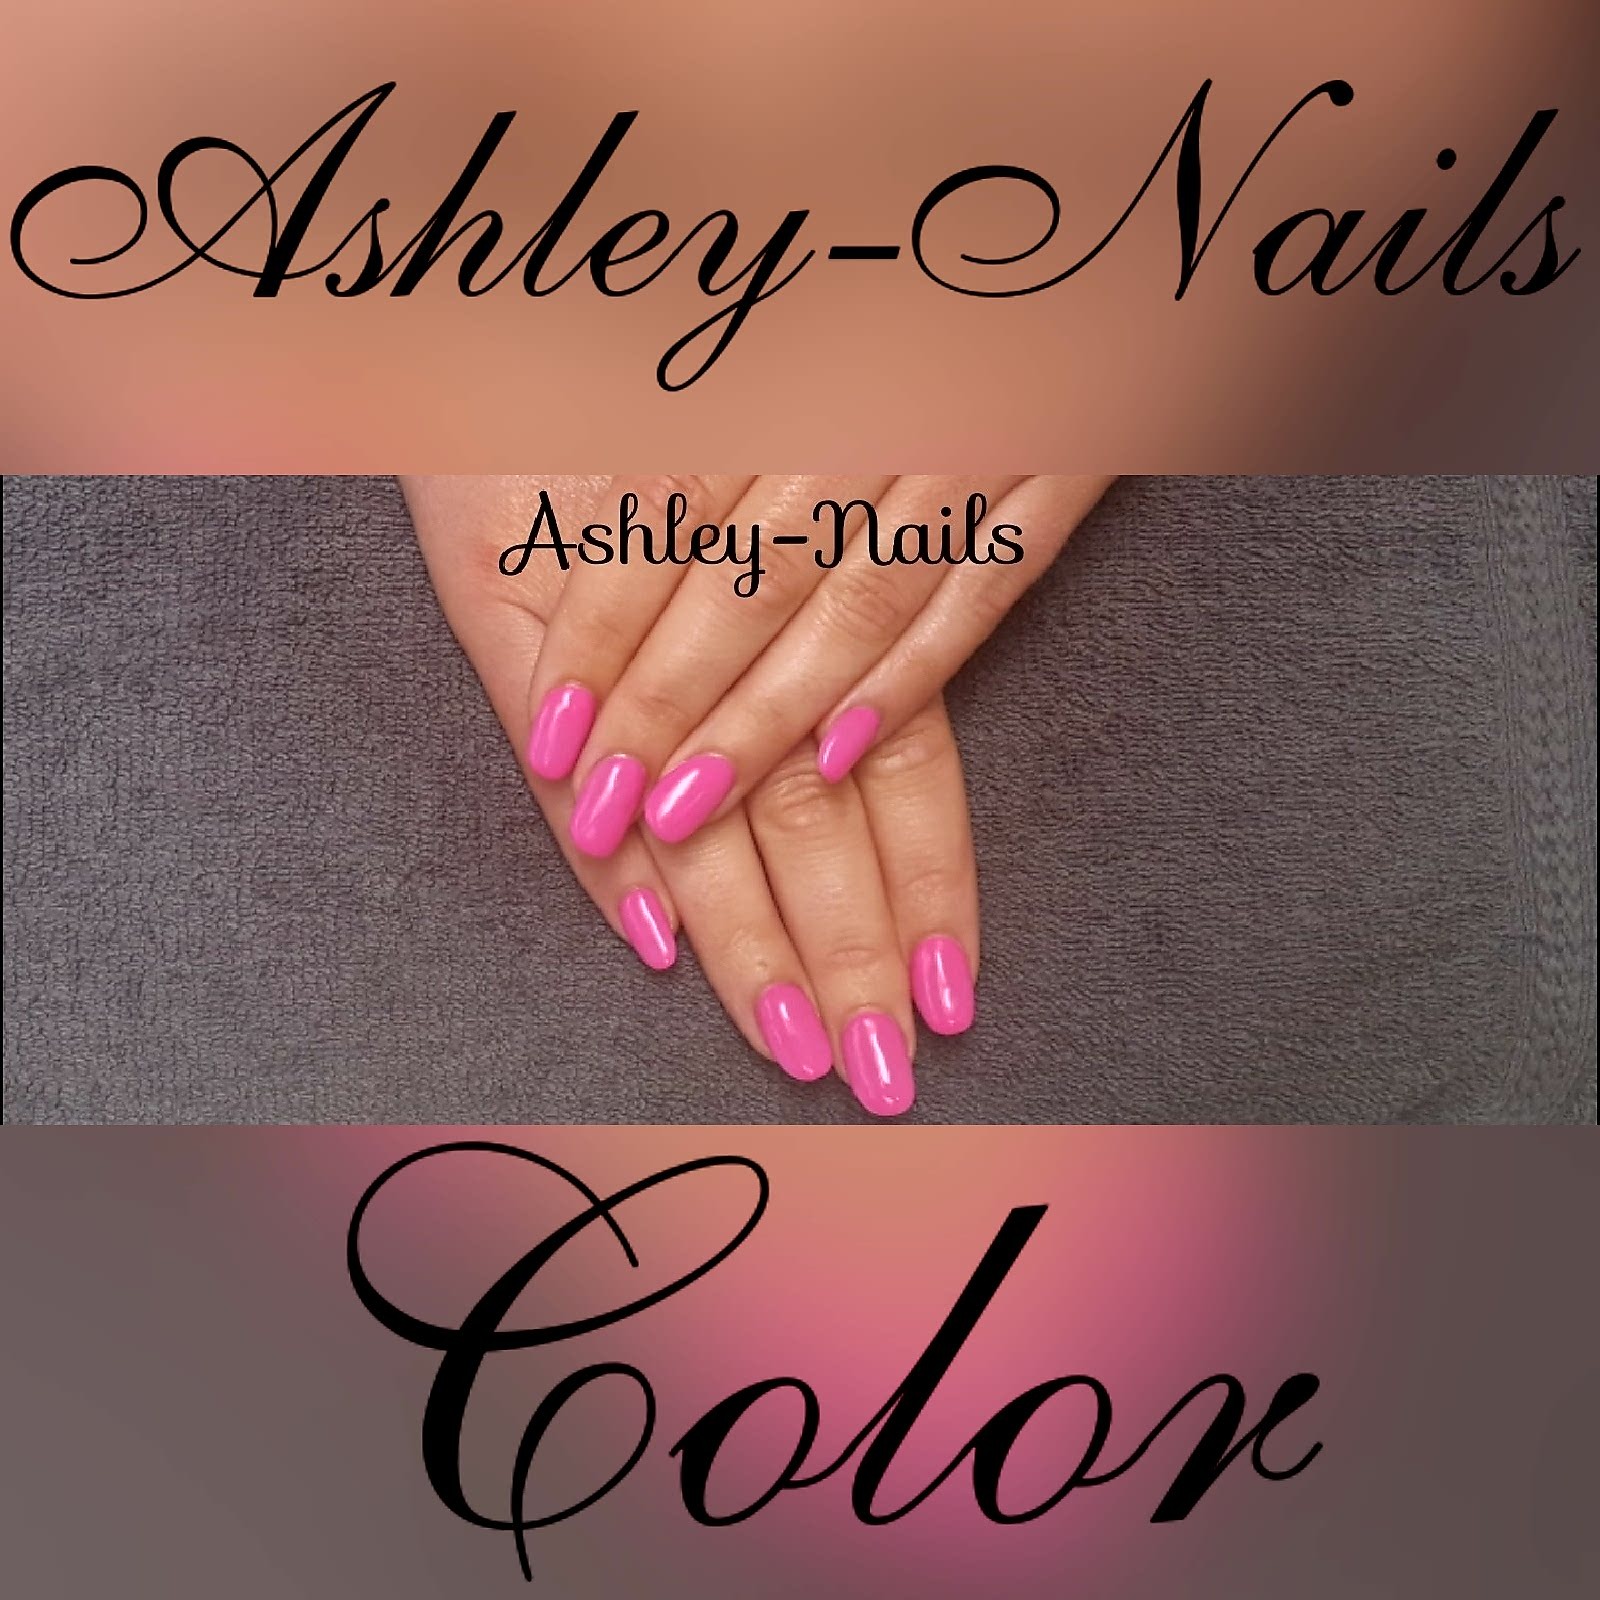 Ashley-Nails: uw nagelstudio in Arnhem voor prachtige kunstnagels - nagelstudio Arnhem